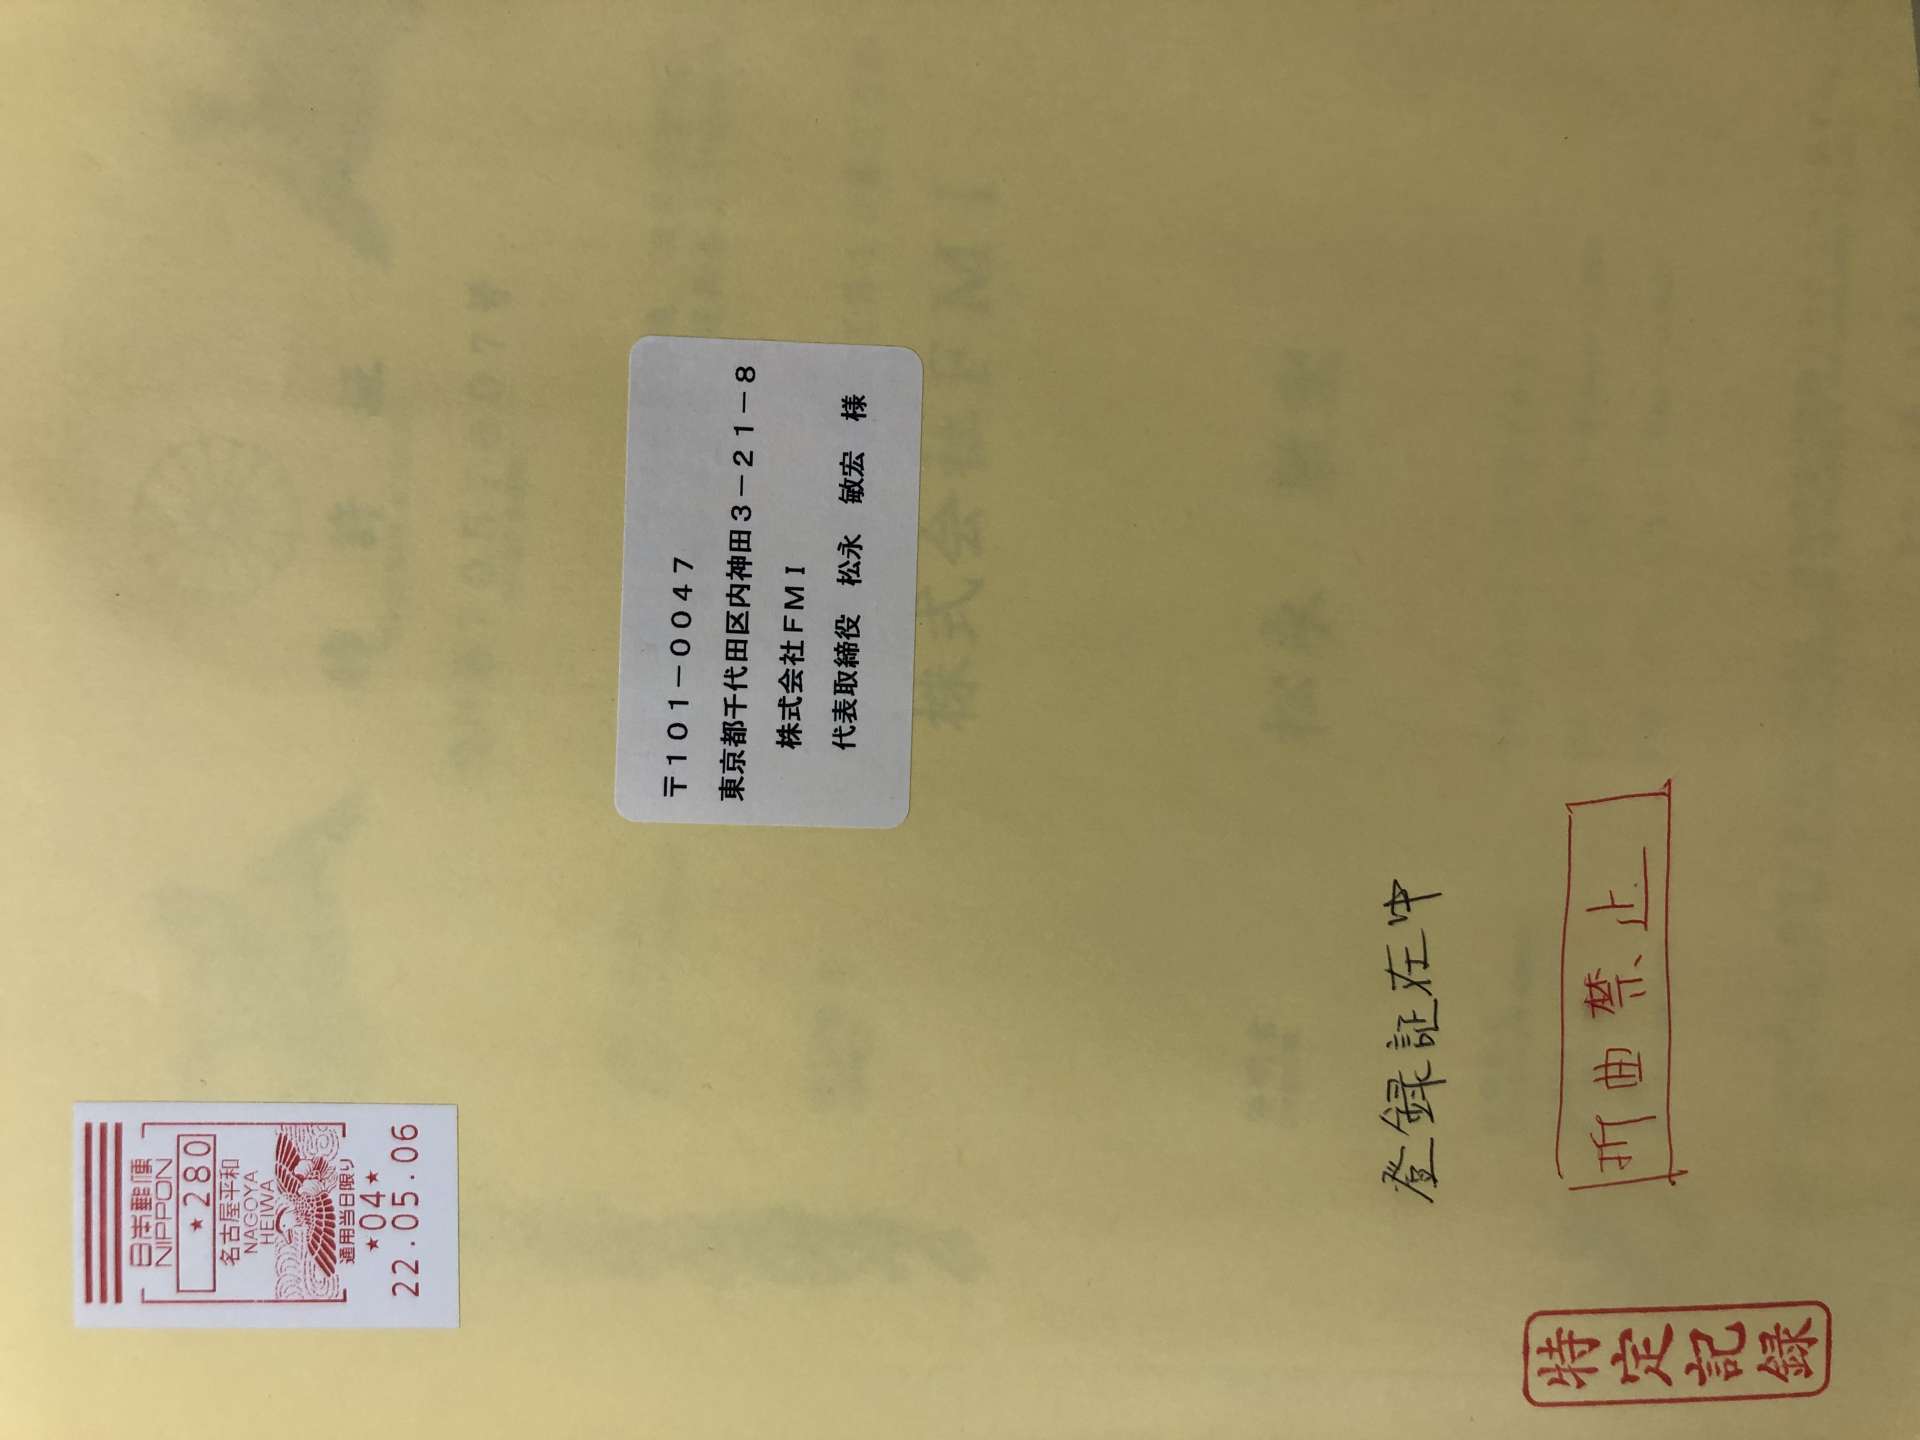 単独での出願の新たな特許証が名古屋より届きました。